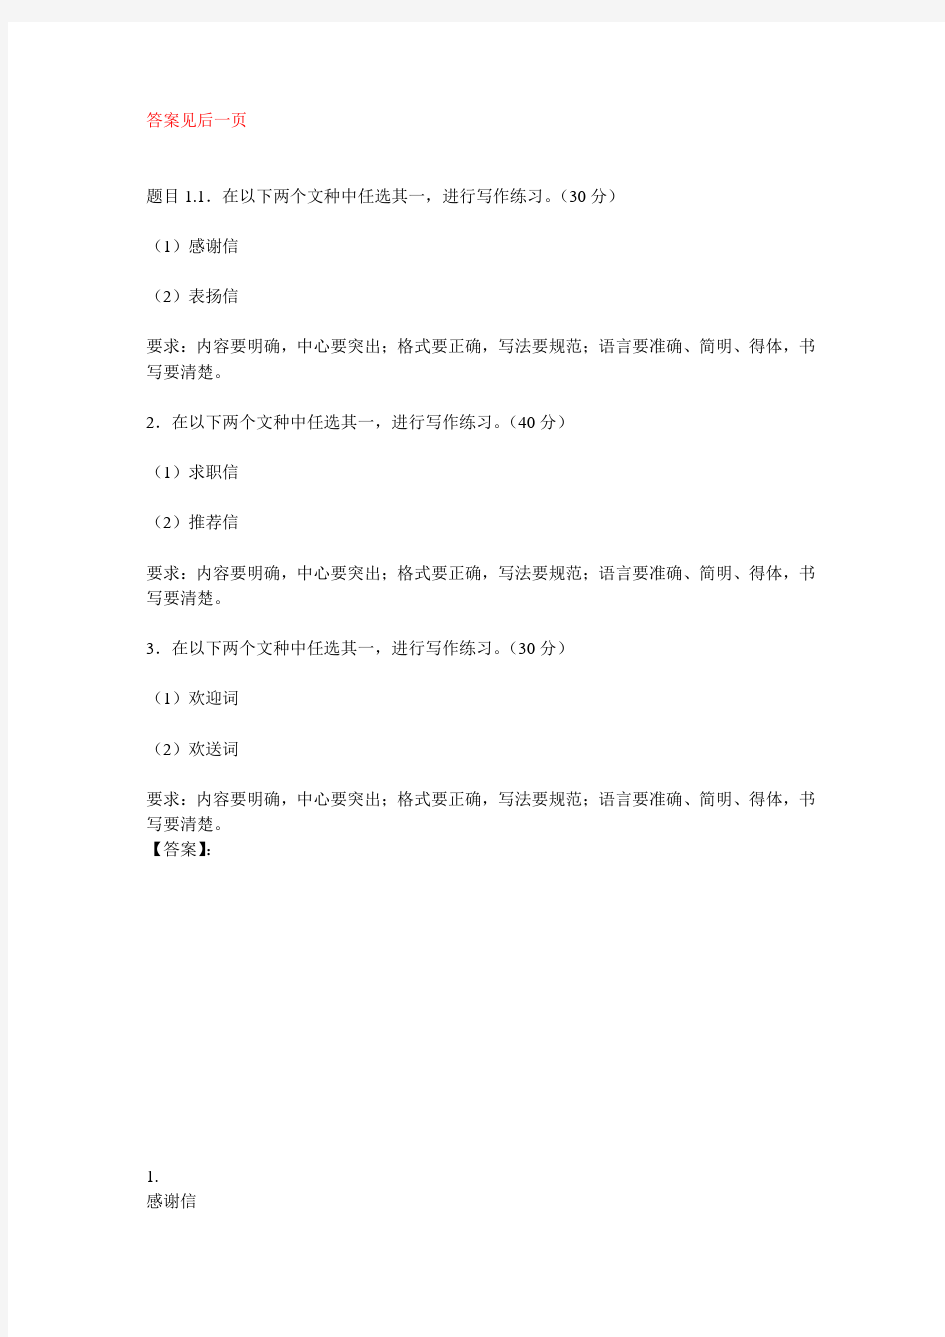 国开电大应用写作(汉语)形考任务3参考答案